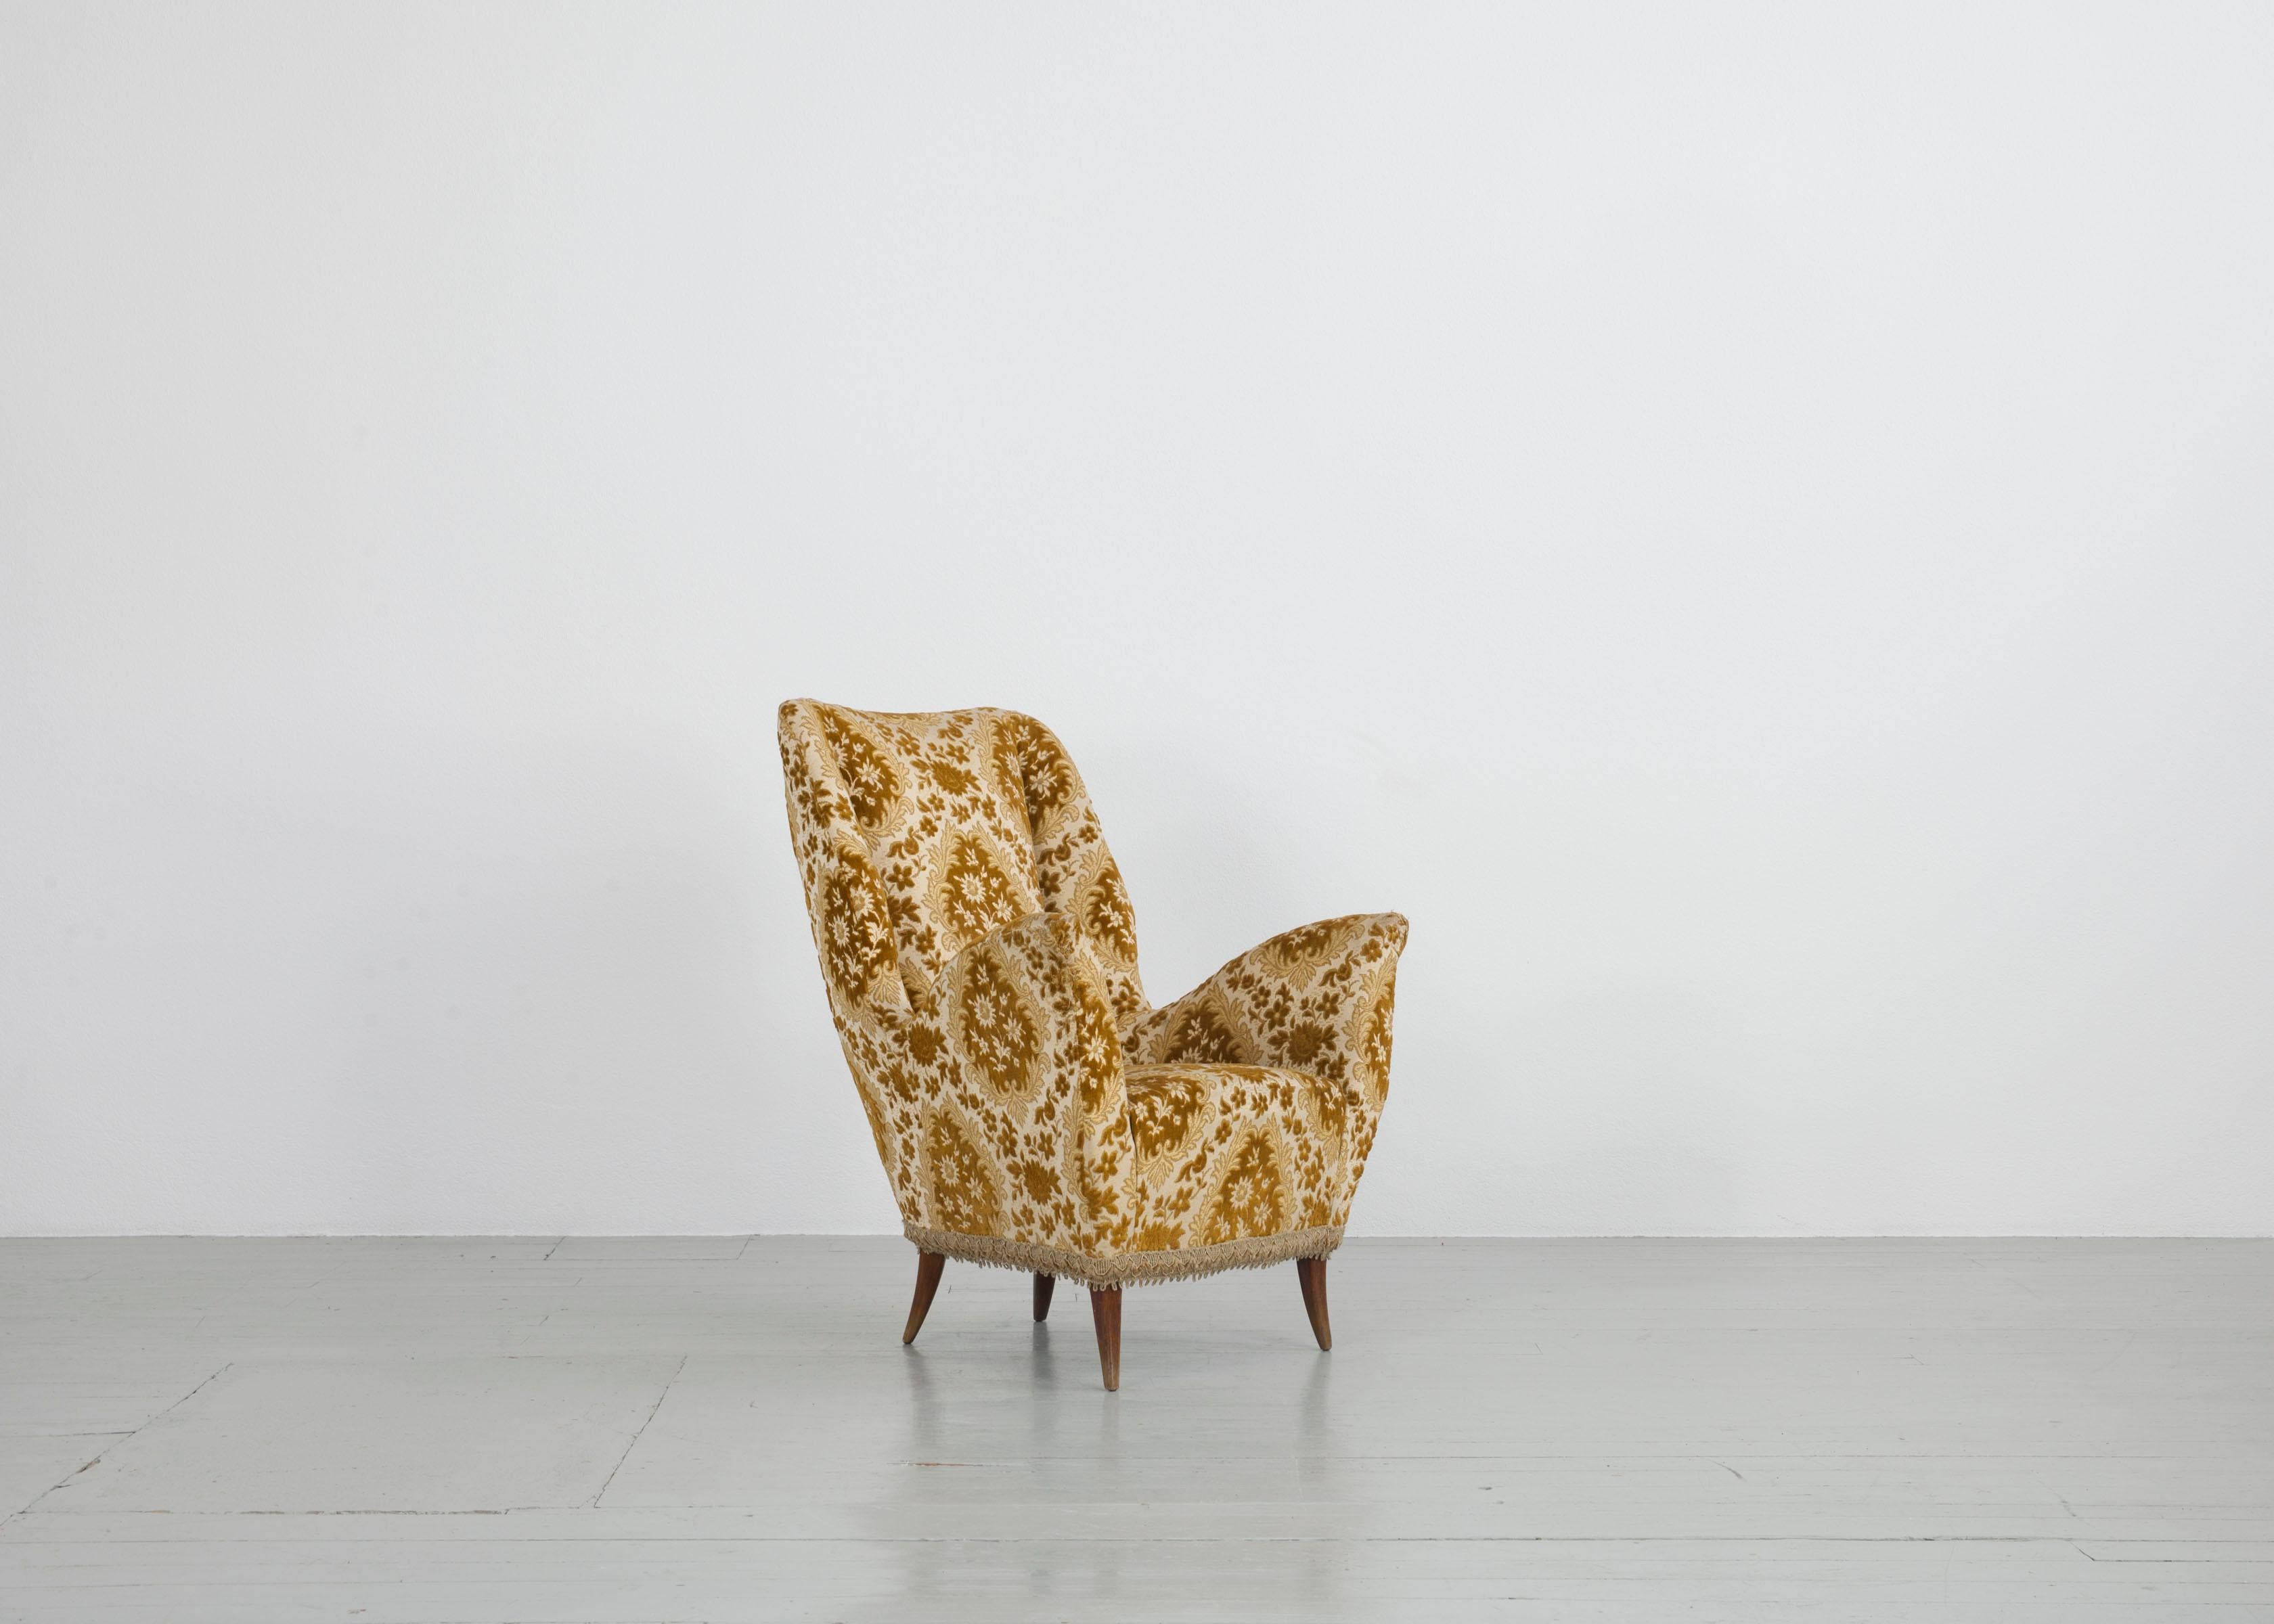 Cet extravagant fauteuil italien a été fabriqué par I.S.A. Bergamo dans les années 1950. Le corps du meuble est recouvert d'un tissu de brocart jaune et est soutenu par quatre pieds en bois patiné. Le fauteuil est en état vintage.

N'hésitez pas à